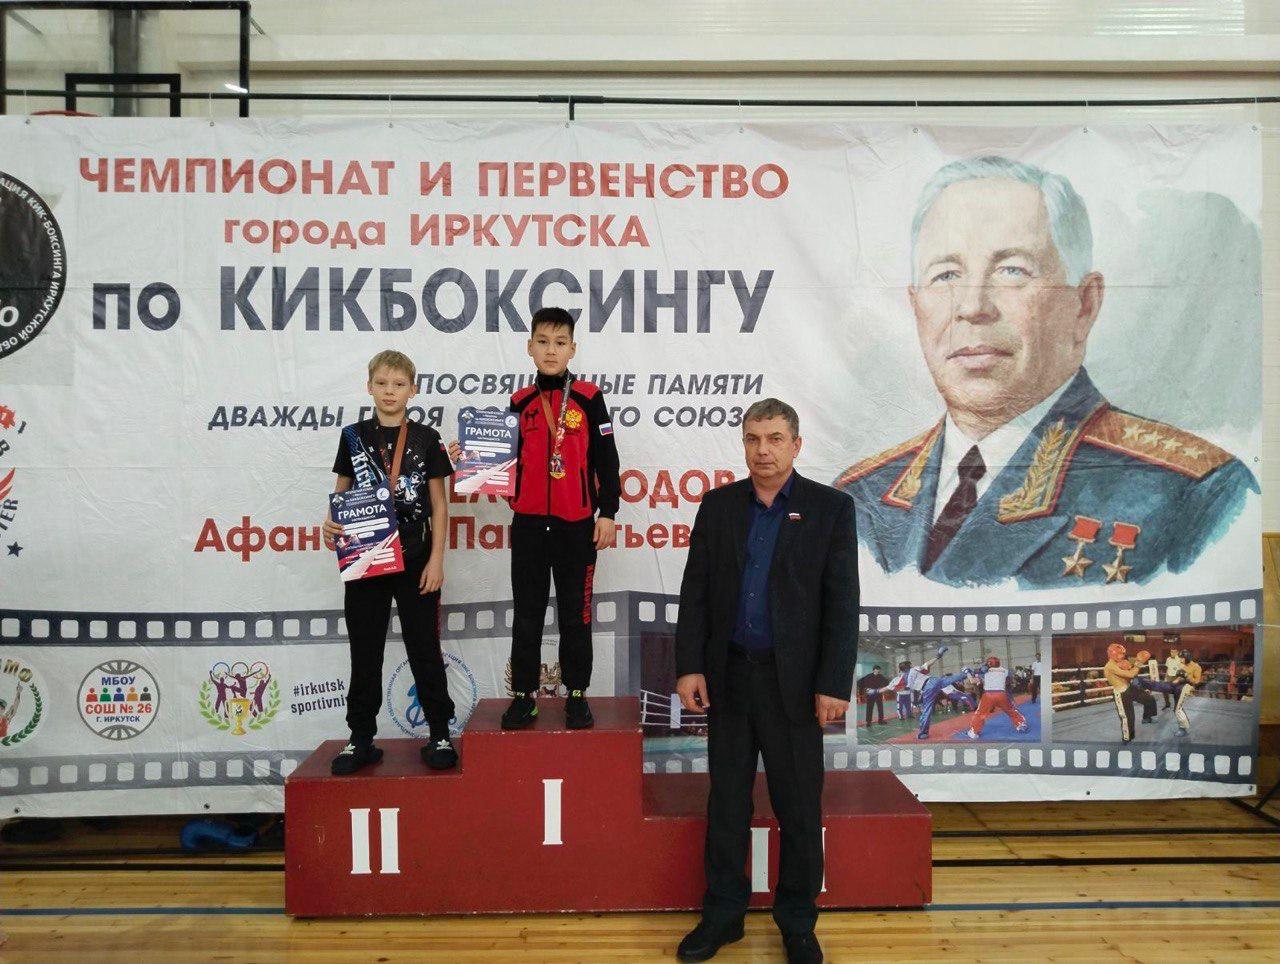 Кикбоксеры Братского района успешно выступили на Чемпионате и Первенстве Иркутска